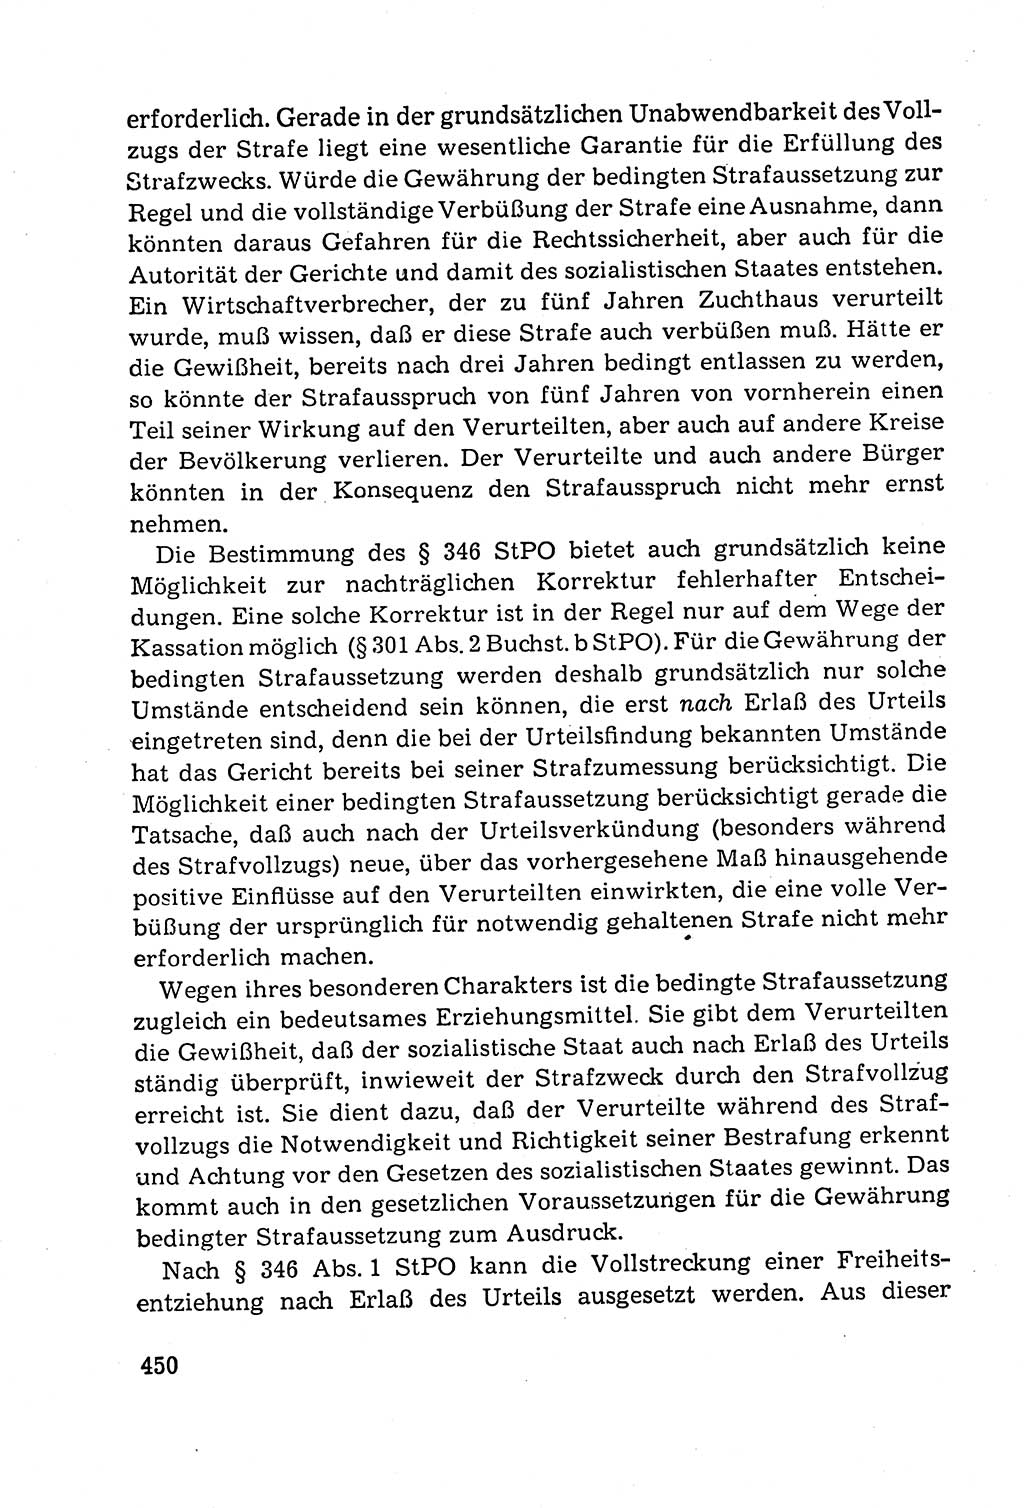 Leitfaden des Strafprozeßrechts der Deutschen Demokratischen Republik (DDR) 1959, Seite 450 (LF StPR DDR 1959, S. 450)